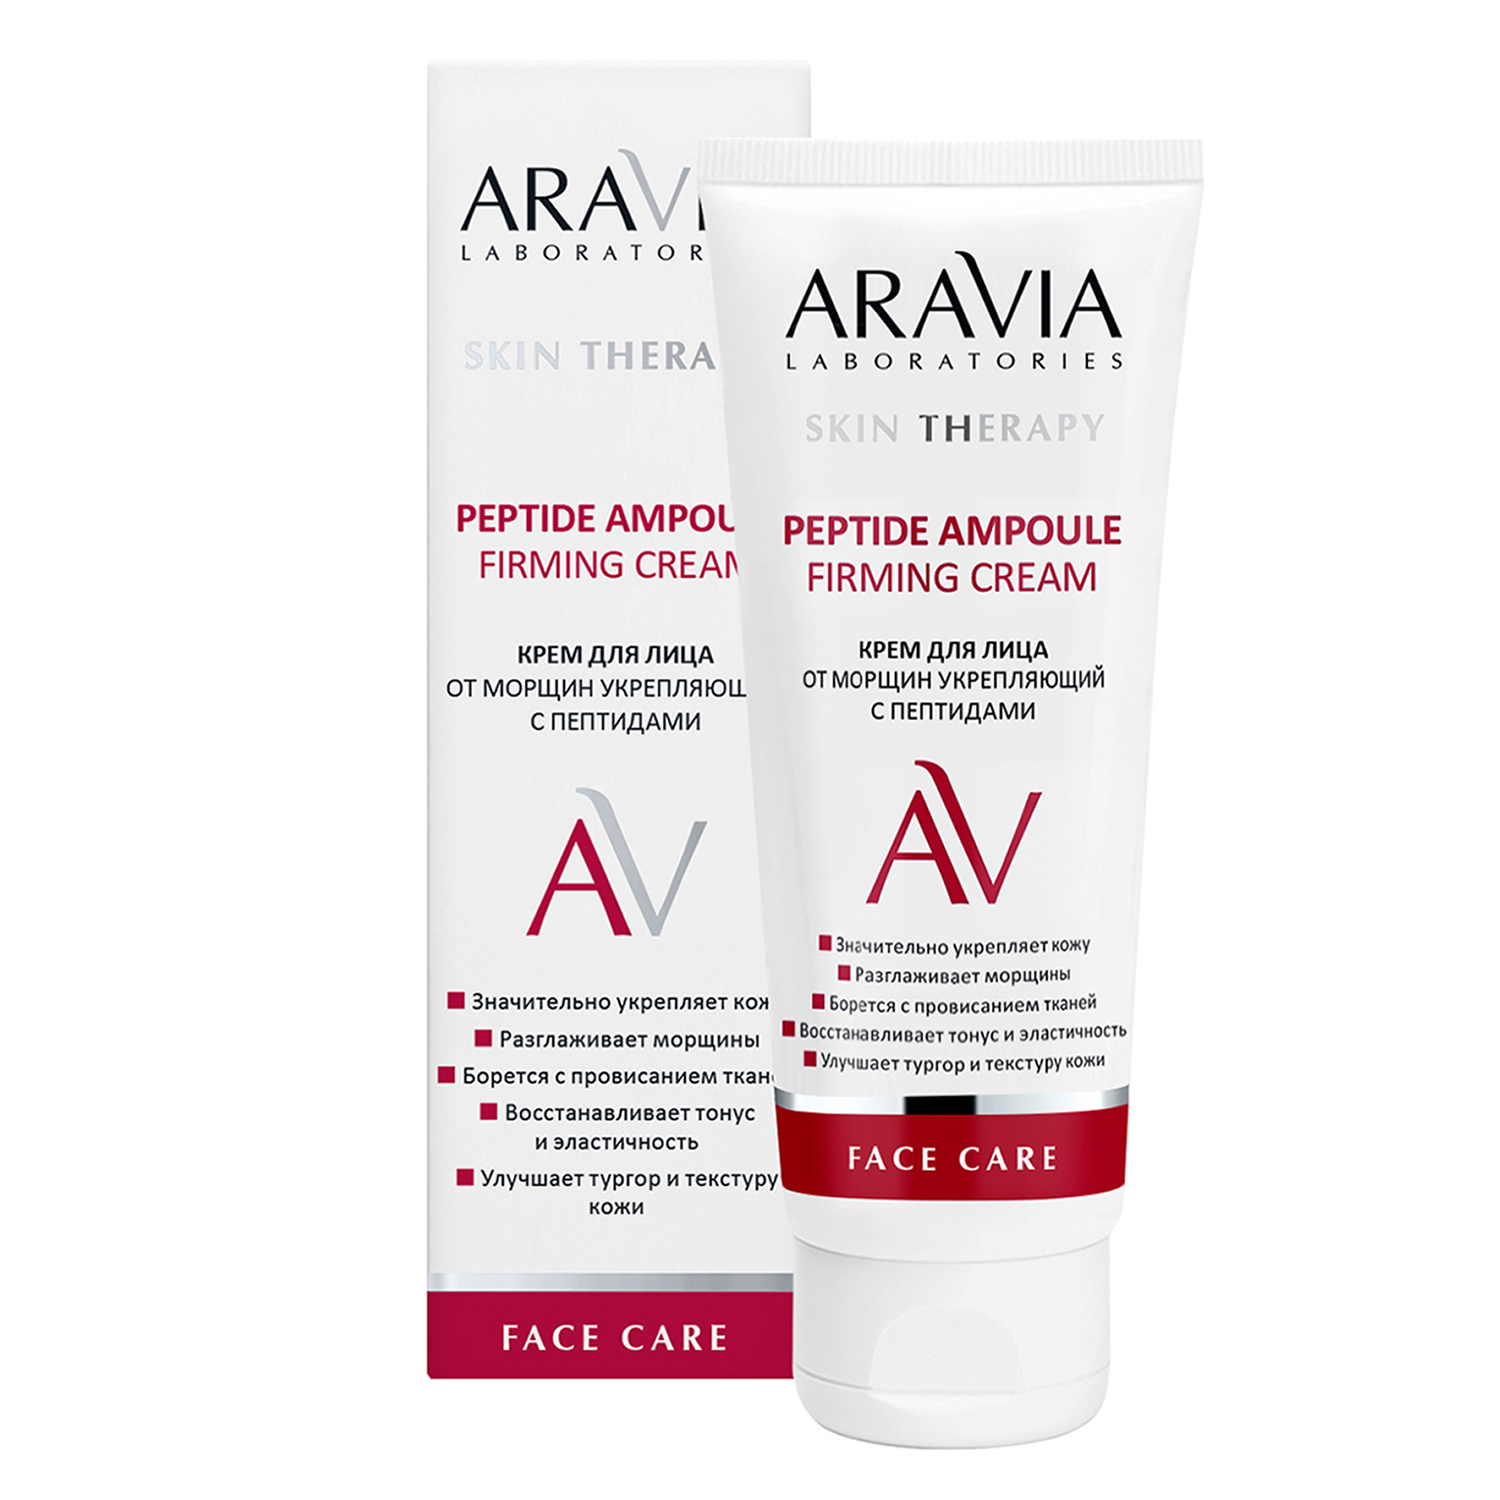 Крем для лица ARAVIA Laboratories от морщин с пептидами Peptide Ampoule Firming Cream 50 мл - фото 4